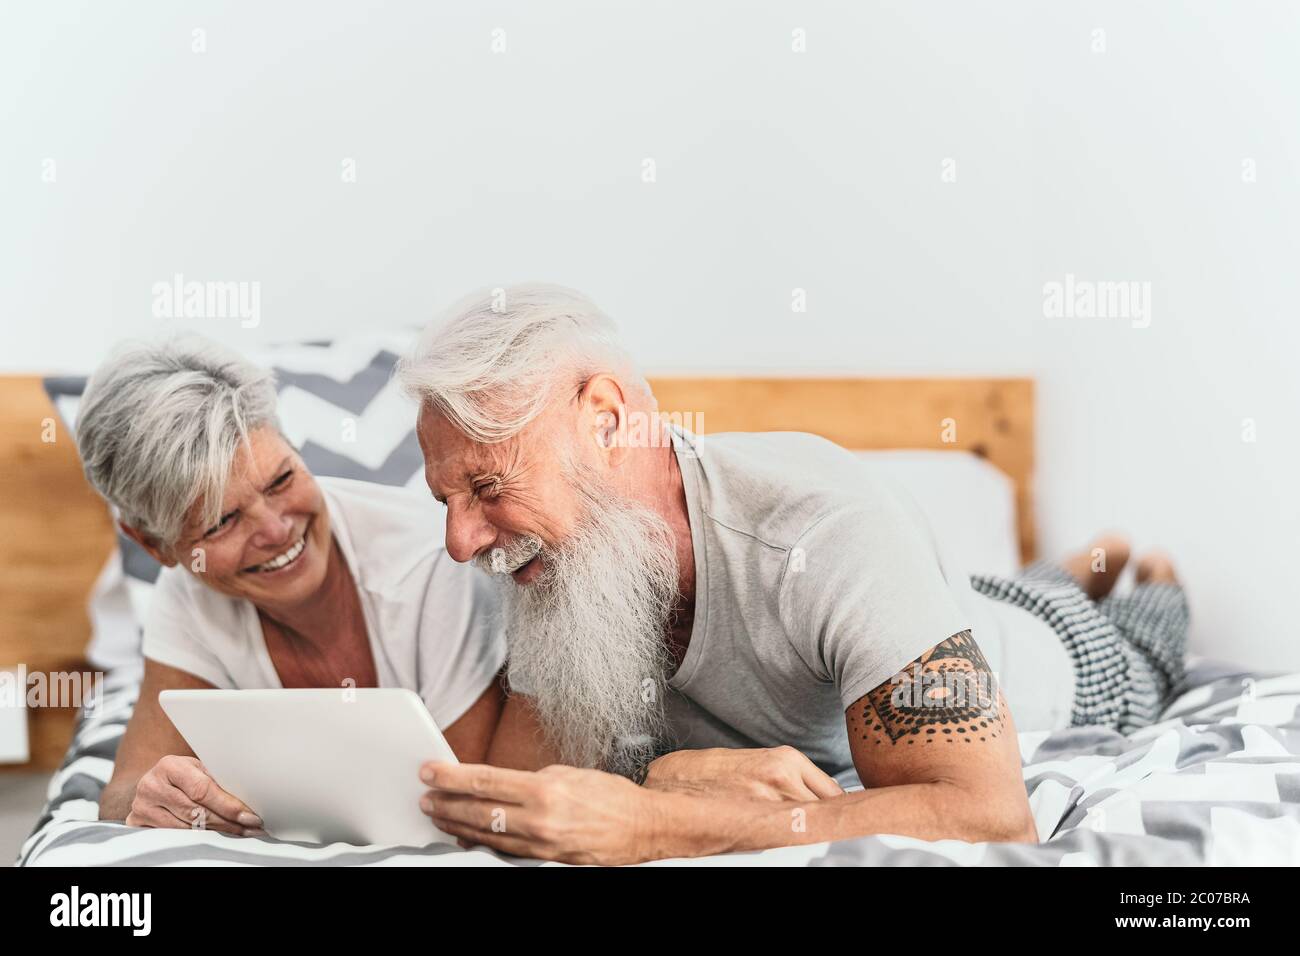 Heureux couple senior utilisant la tablette numérique dans le lit - personnes âgées ayant drôle de temps de lit ensemble Banque D'Images